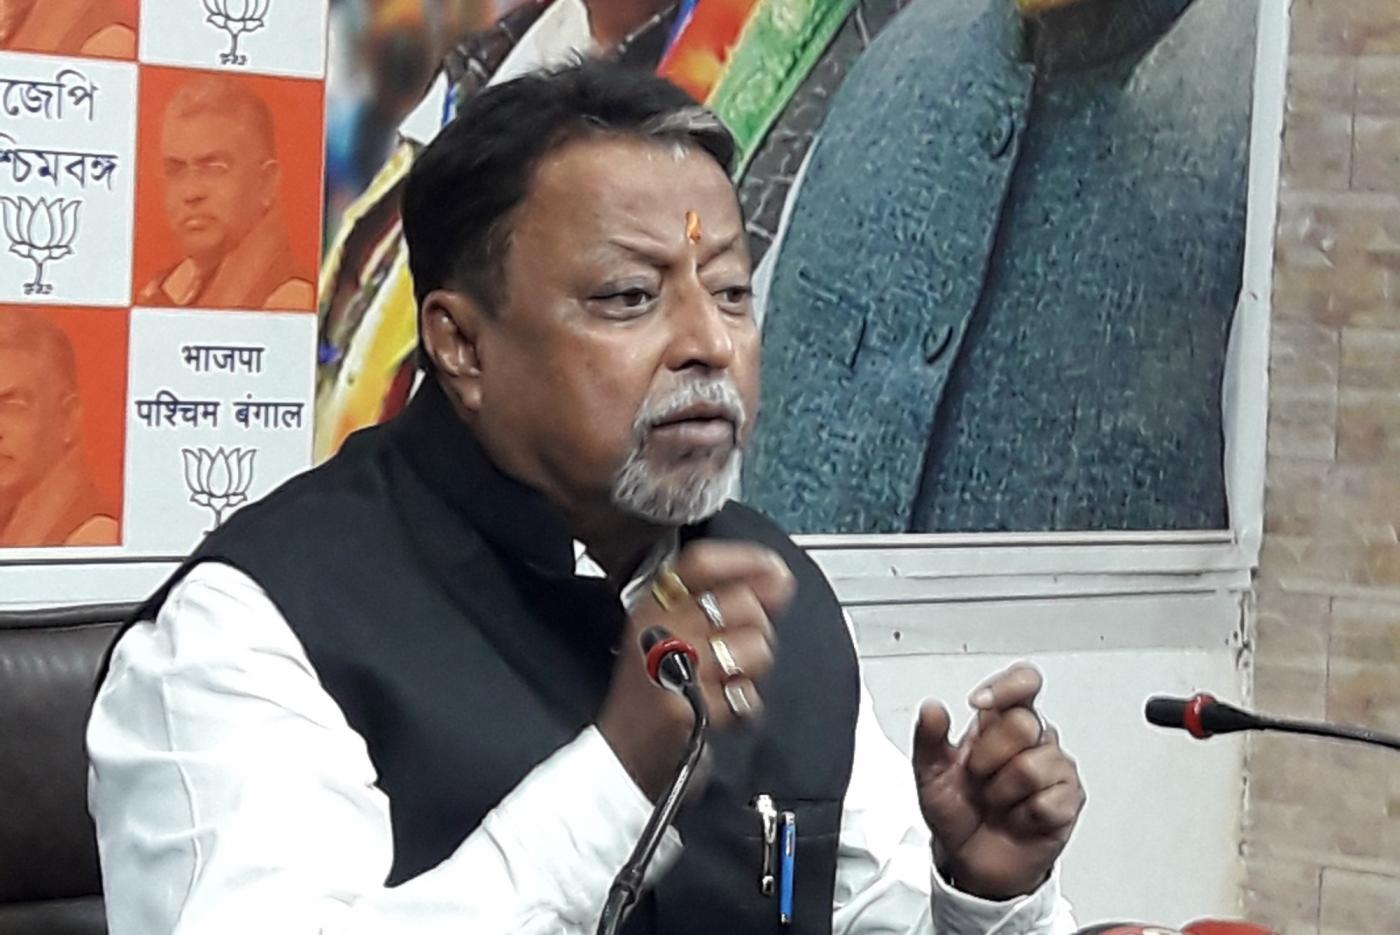 Kolkata: BJP leader Mukul Roy addresses a press conference in Kolkata Feb 10, 2019. (Photo: IANS) by .